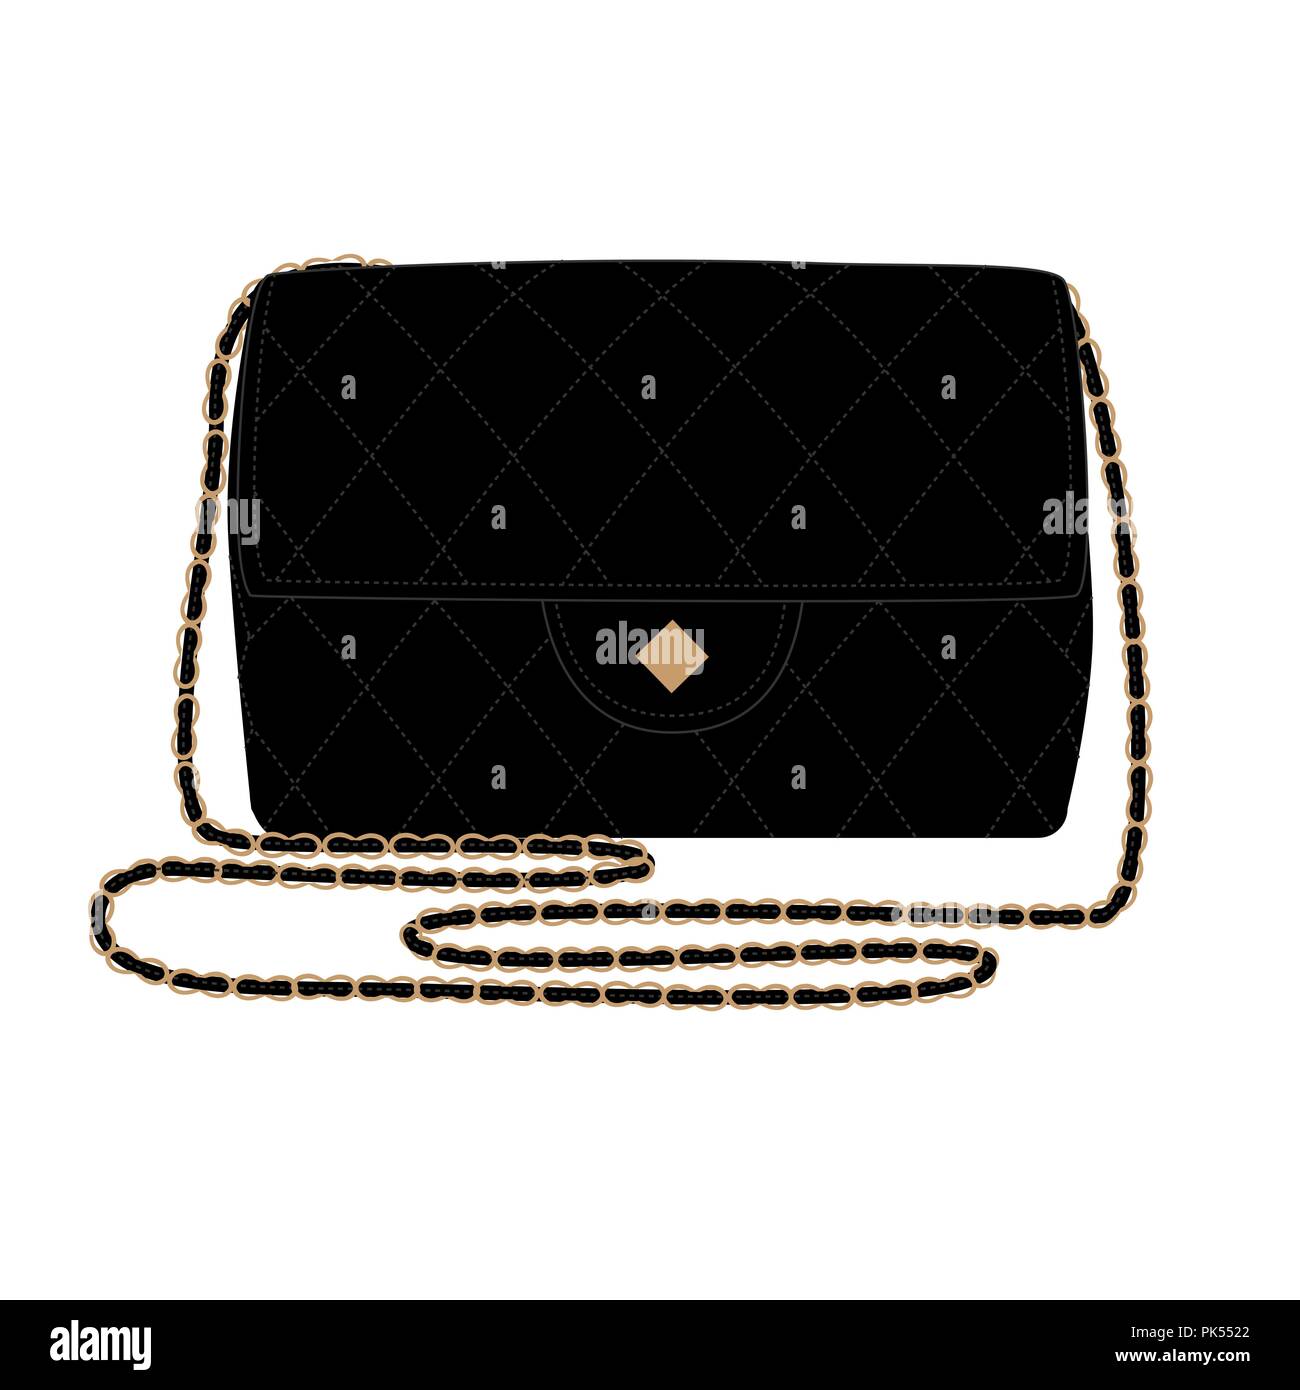 L'illustration de mode avec sac à main noir quilt. Sac Chanel vector illustration Illustration de Vecteur